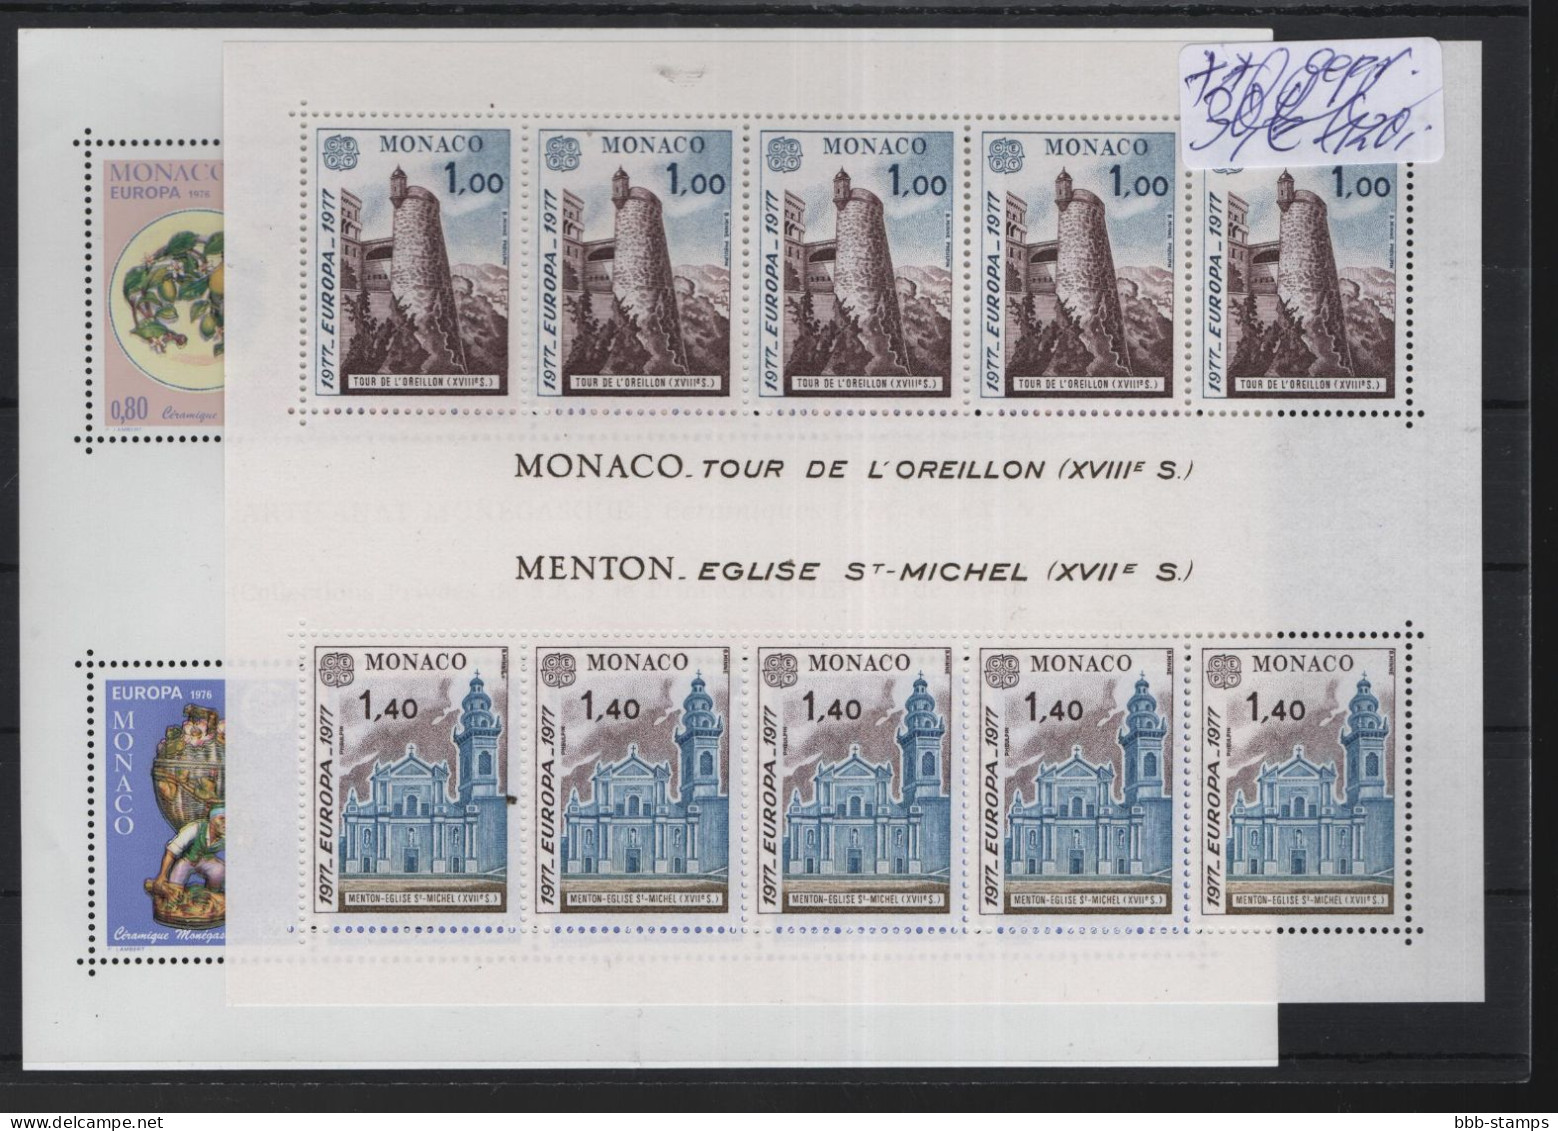 Monaco Michel Cat.No. CEPT issues mnh/** 1962 - 2001